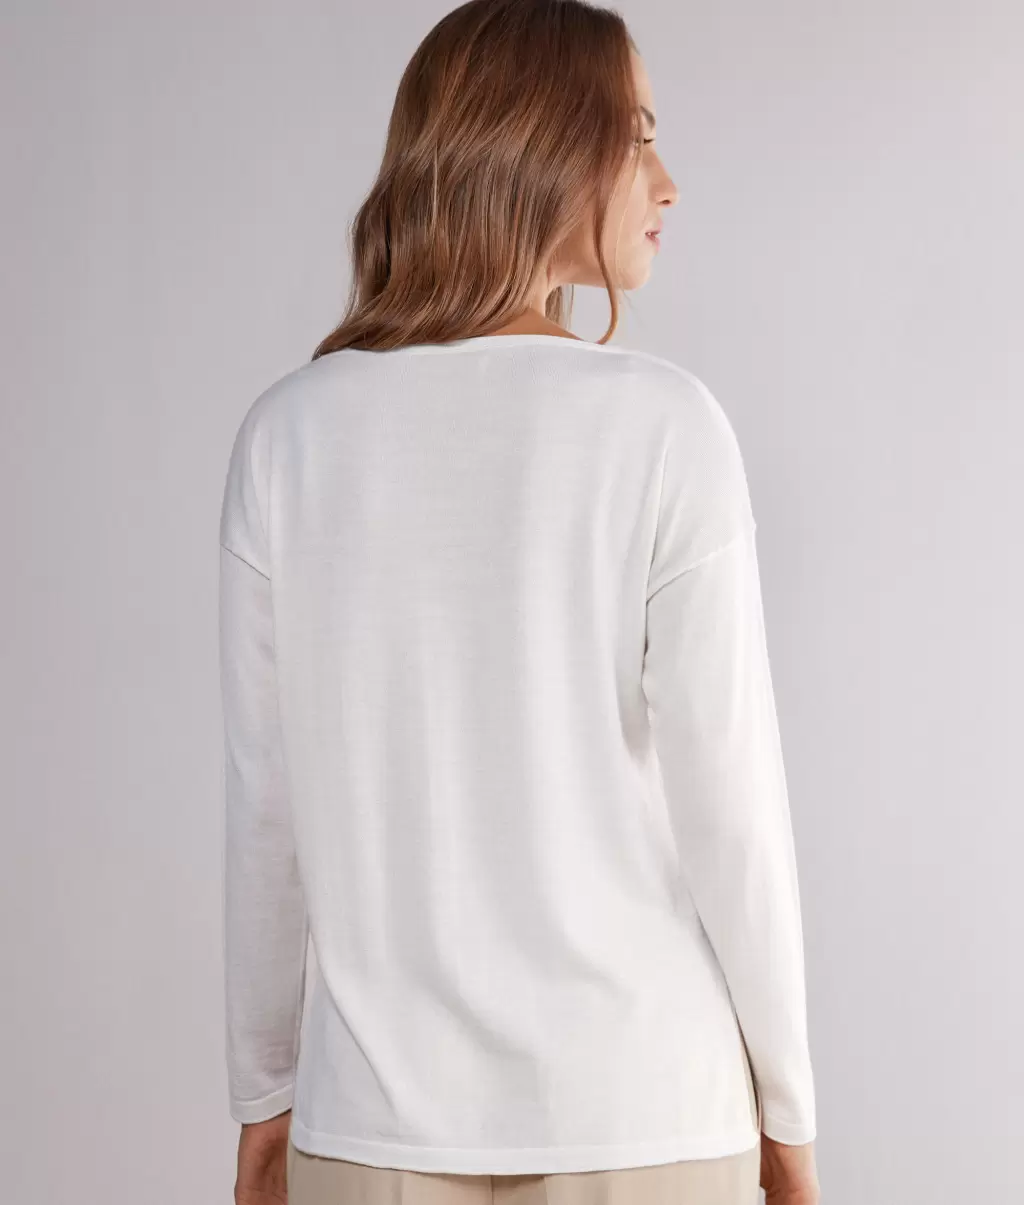 Falconeri Swetry Z Okrągłym Dekoltem White Kobieta Bluzka Z Dekoltem W Łódkę Z Kaszmiru Ultrafine - 2